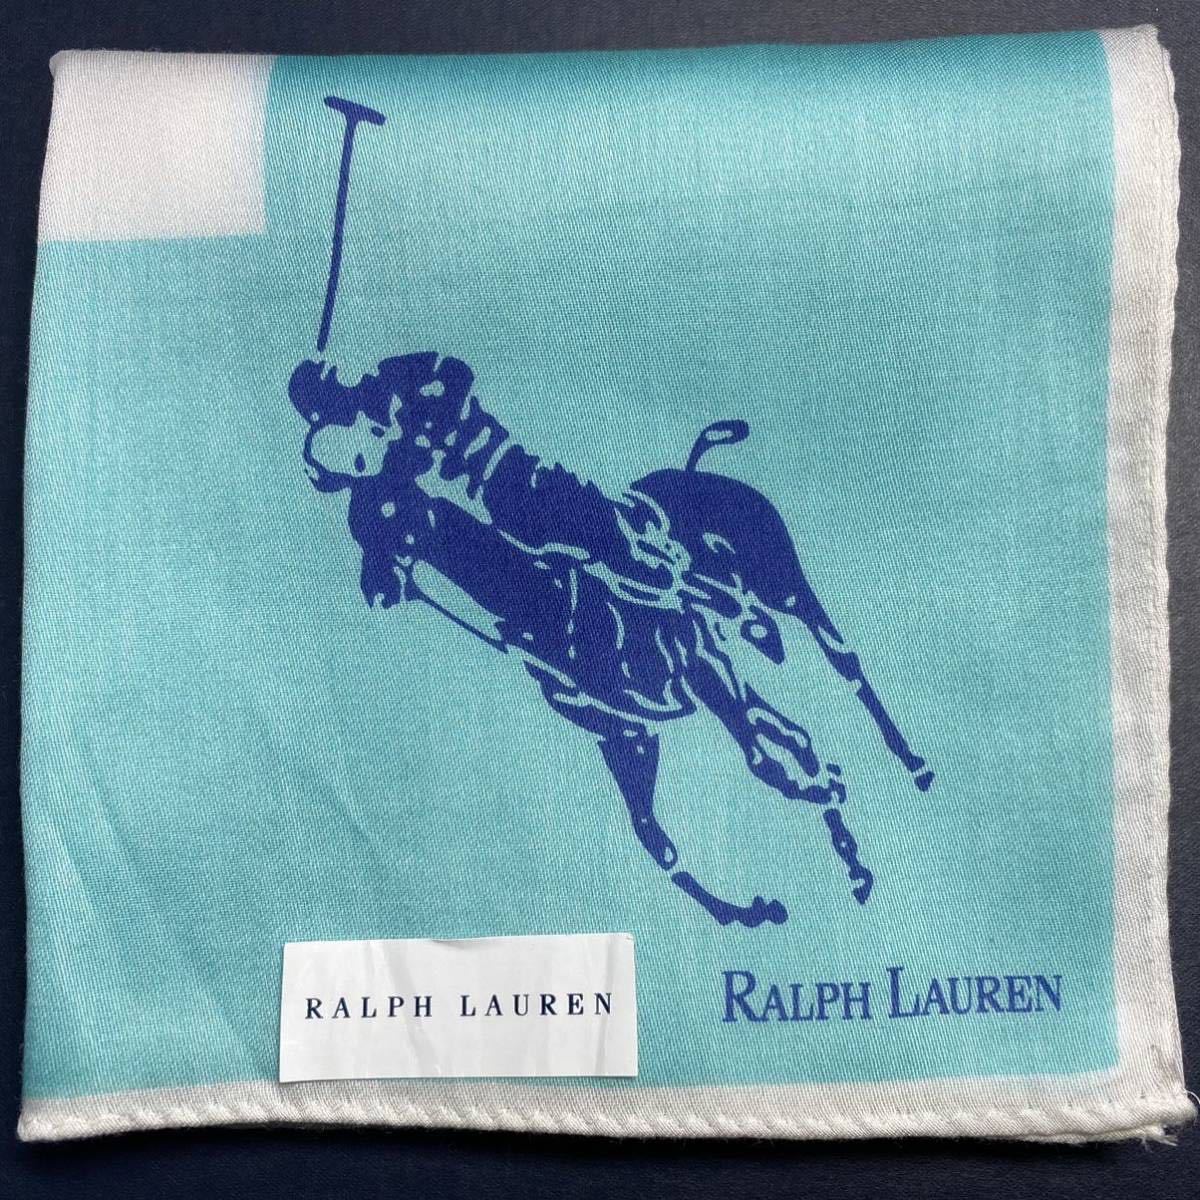  редкость 00s новый товар с биркой Good Design река сторона сделано в Японии Polo RALPH LAUREN Ralph Lauren 2 цветный bai цвет Bigpo колено носовой платок бандана большой размер примерно 50×49